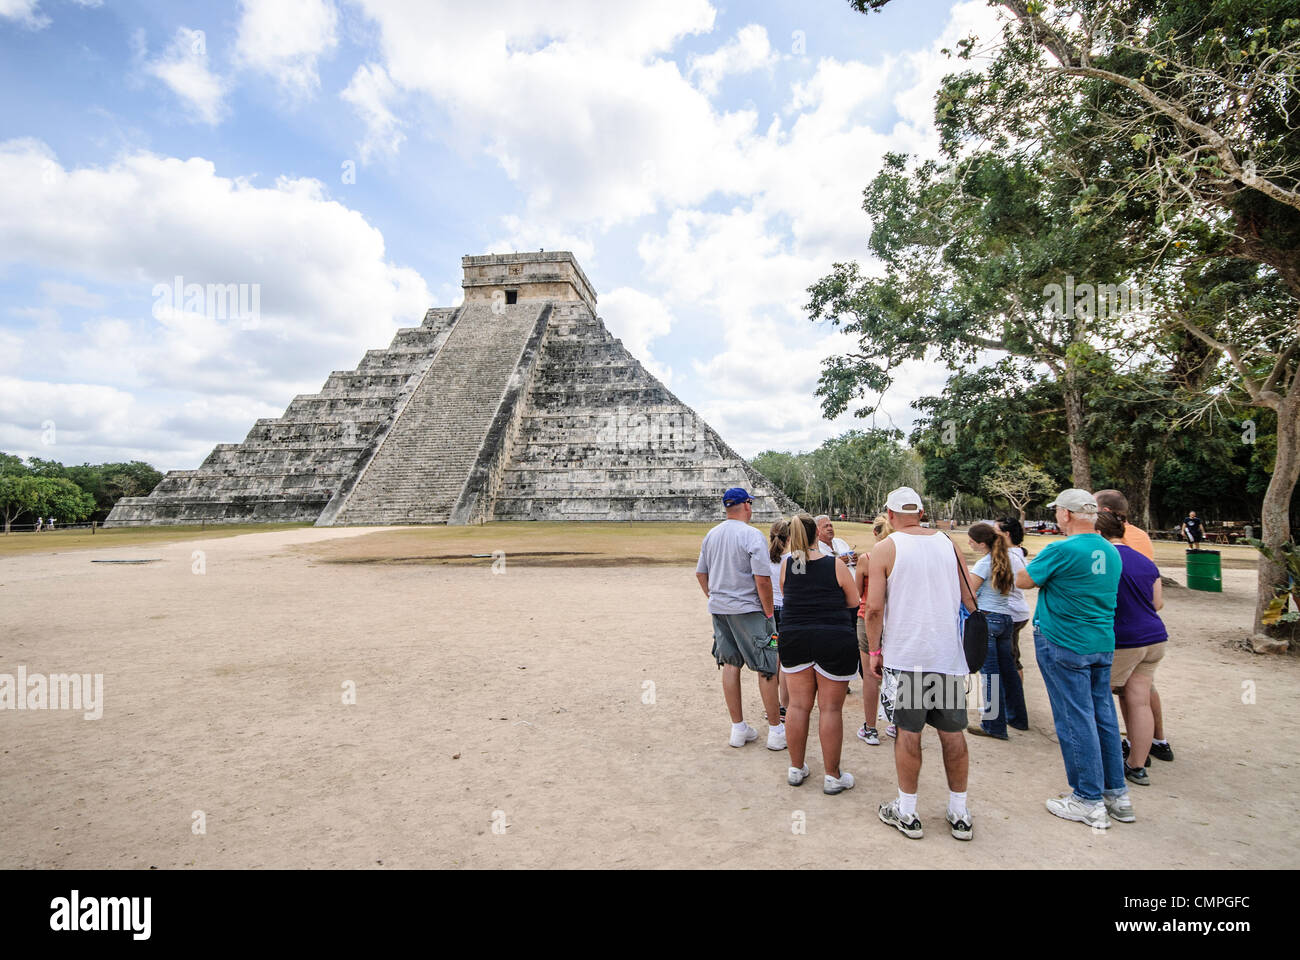 CHICHEN ITZA, Mexique - Temple de Kukulkan (El Castillo) à la Zone archéologique de Chichen Itza, les ruines d'une importante ville de la civilisation Maya au coeur de la péninsule du Yucatan au Mexique. Un groupe de touristes se tient à la droite du cadre. Banque D'Images